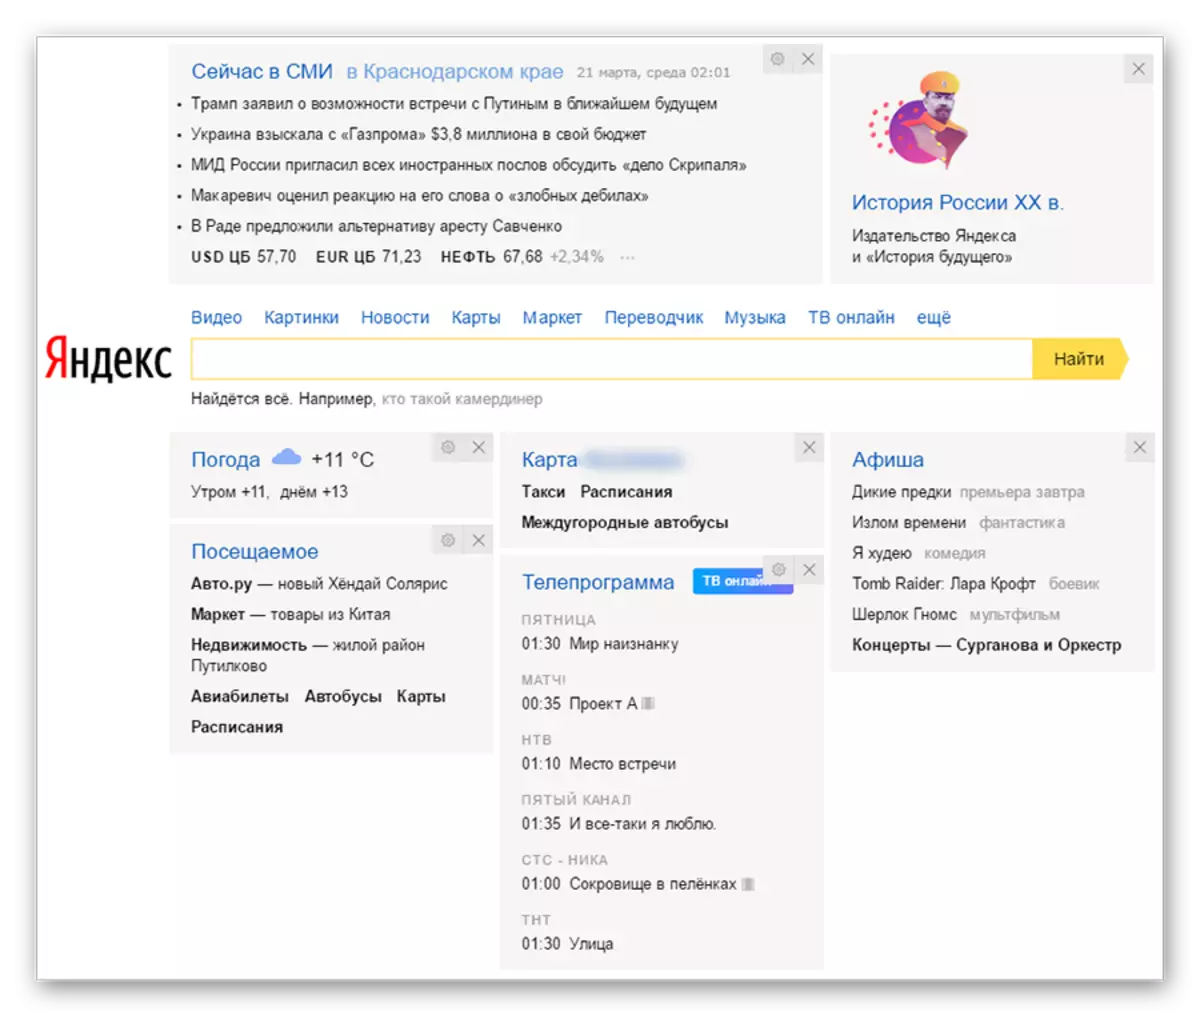 Yandex- ի հիմնական էջում վիդջեթներ տեղադրելը